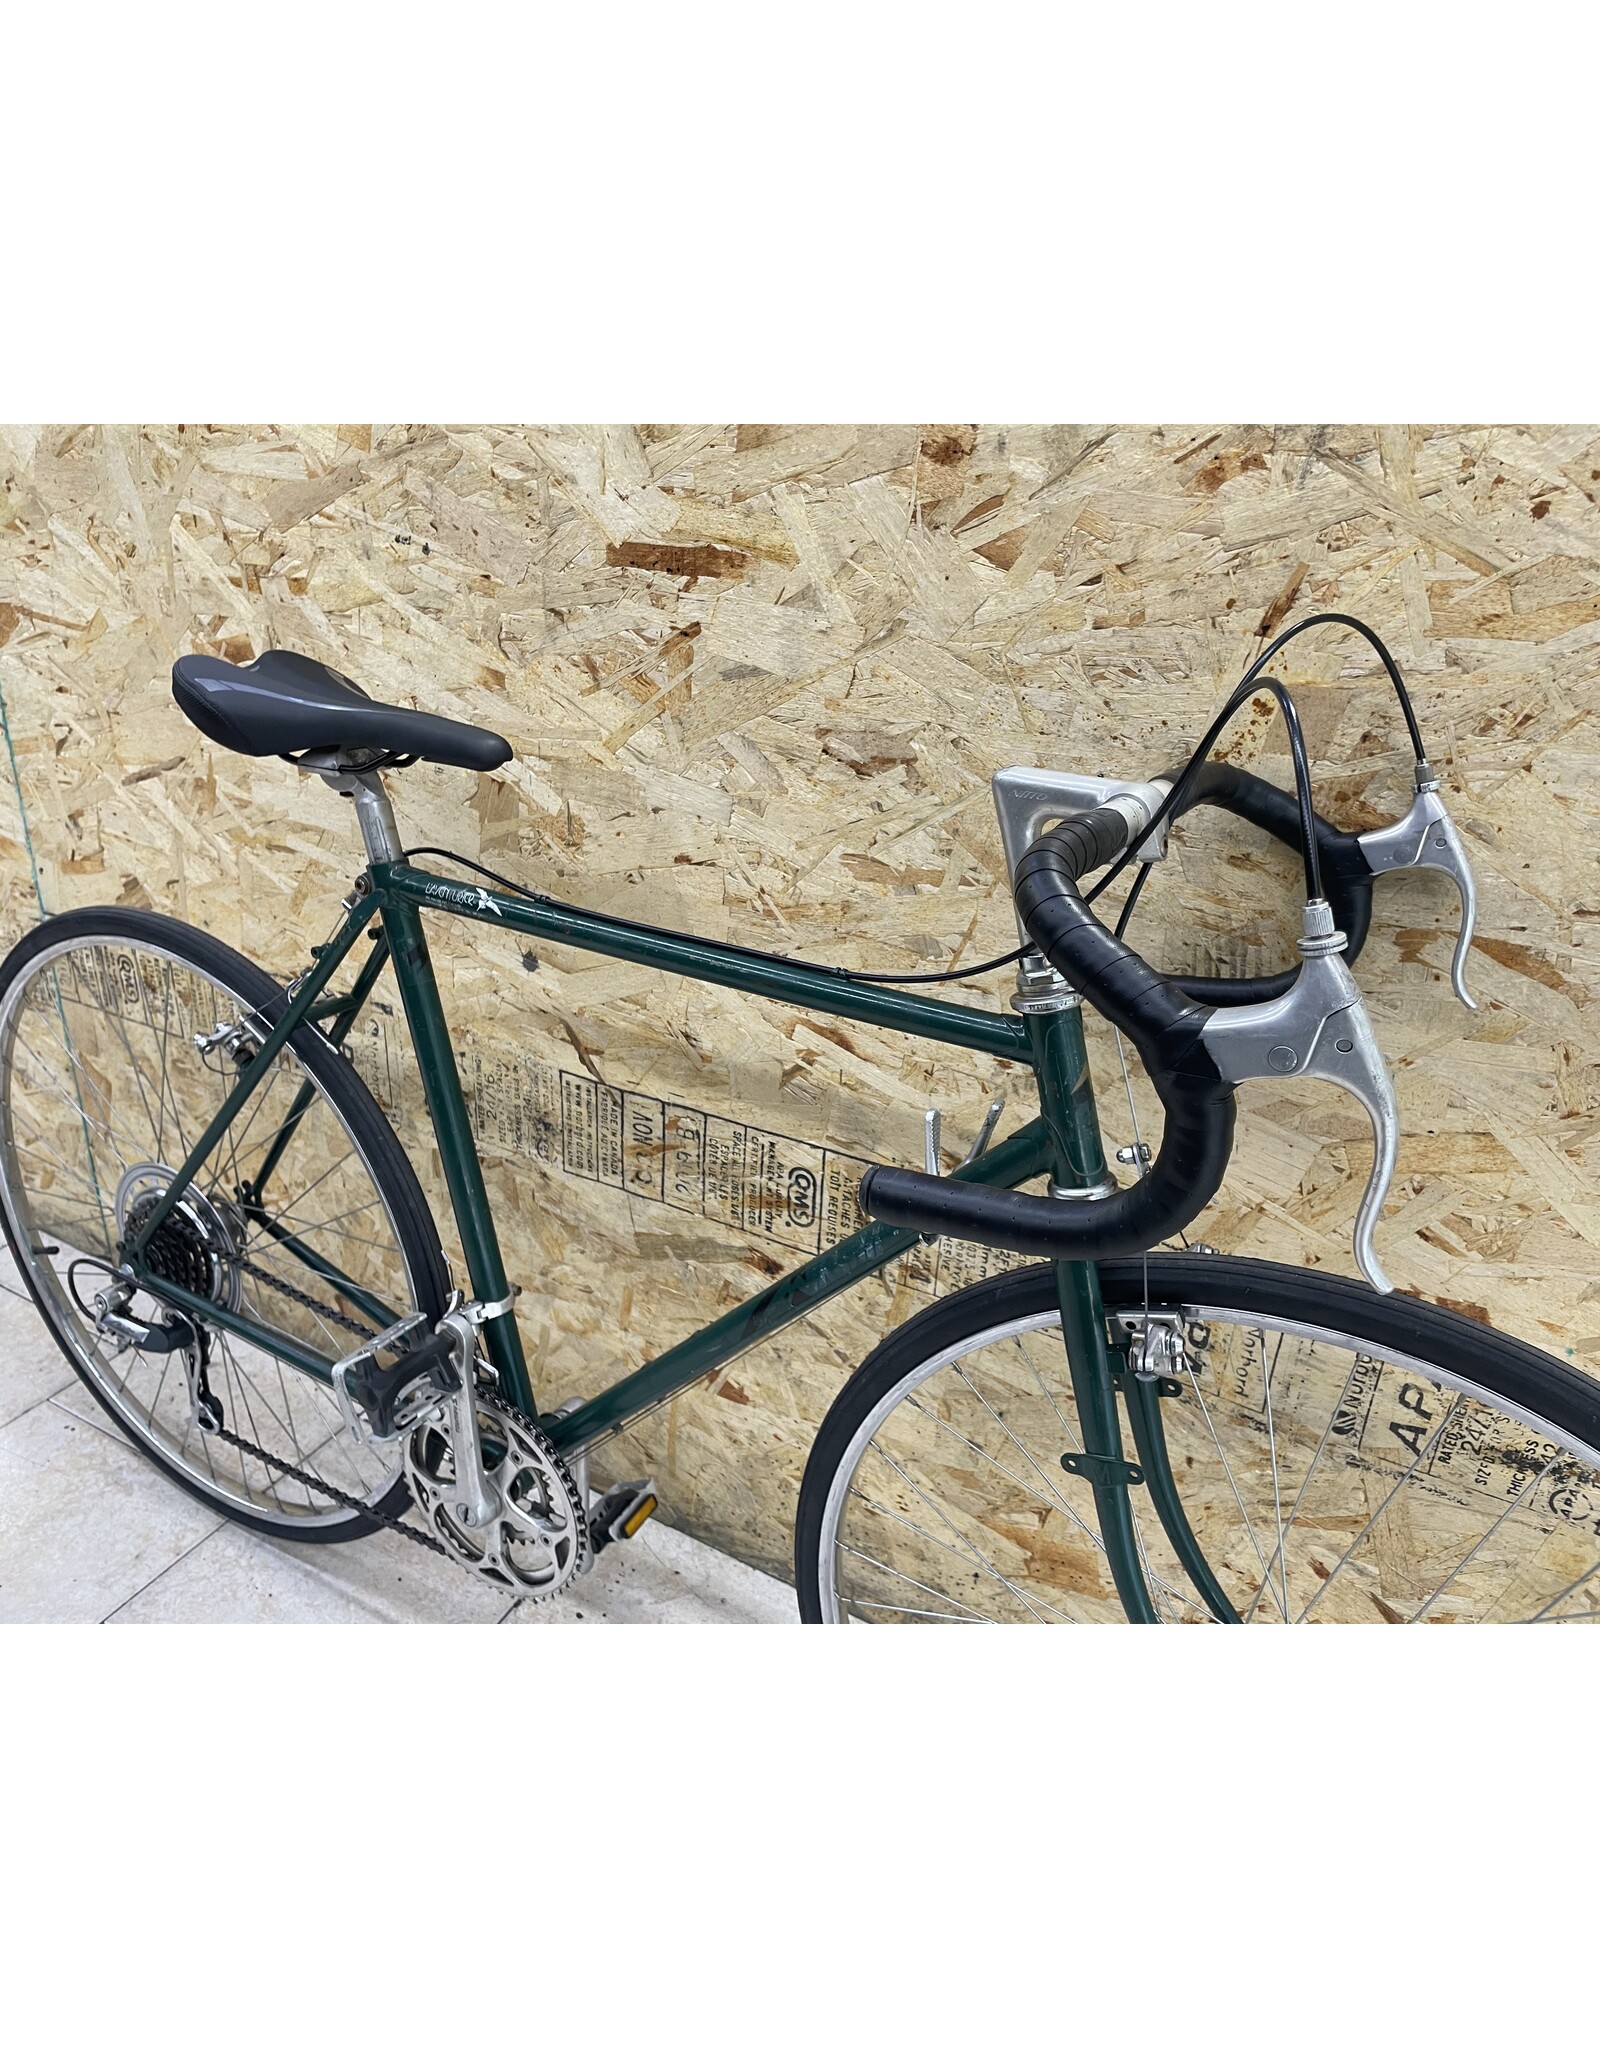 Vélo de cyclotourisme usagé Mikado 20'' - 12246